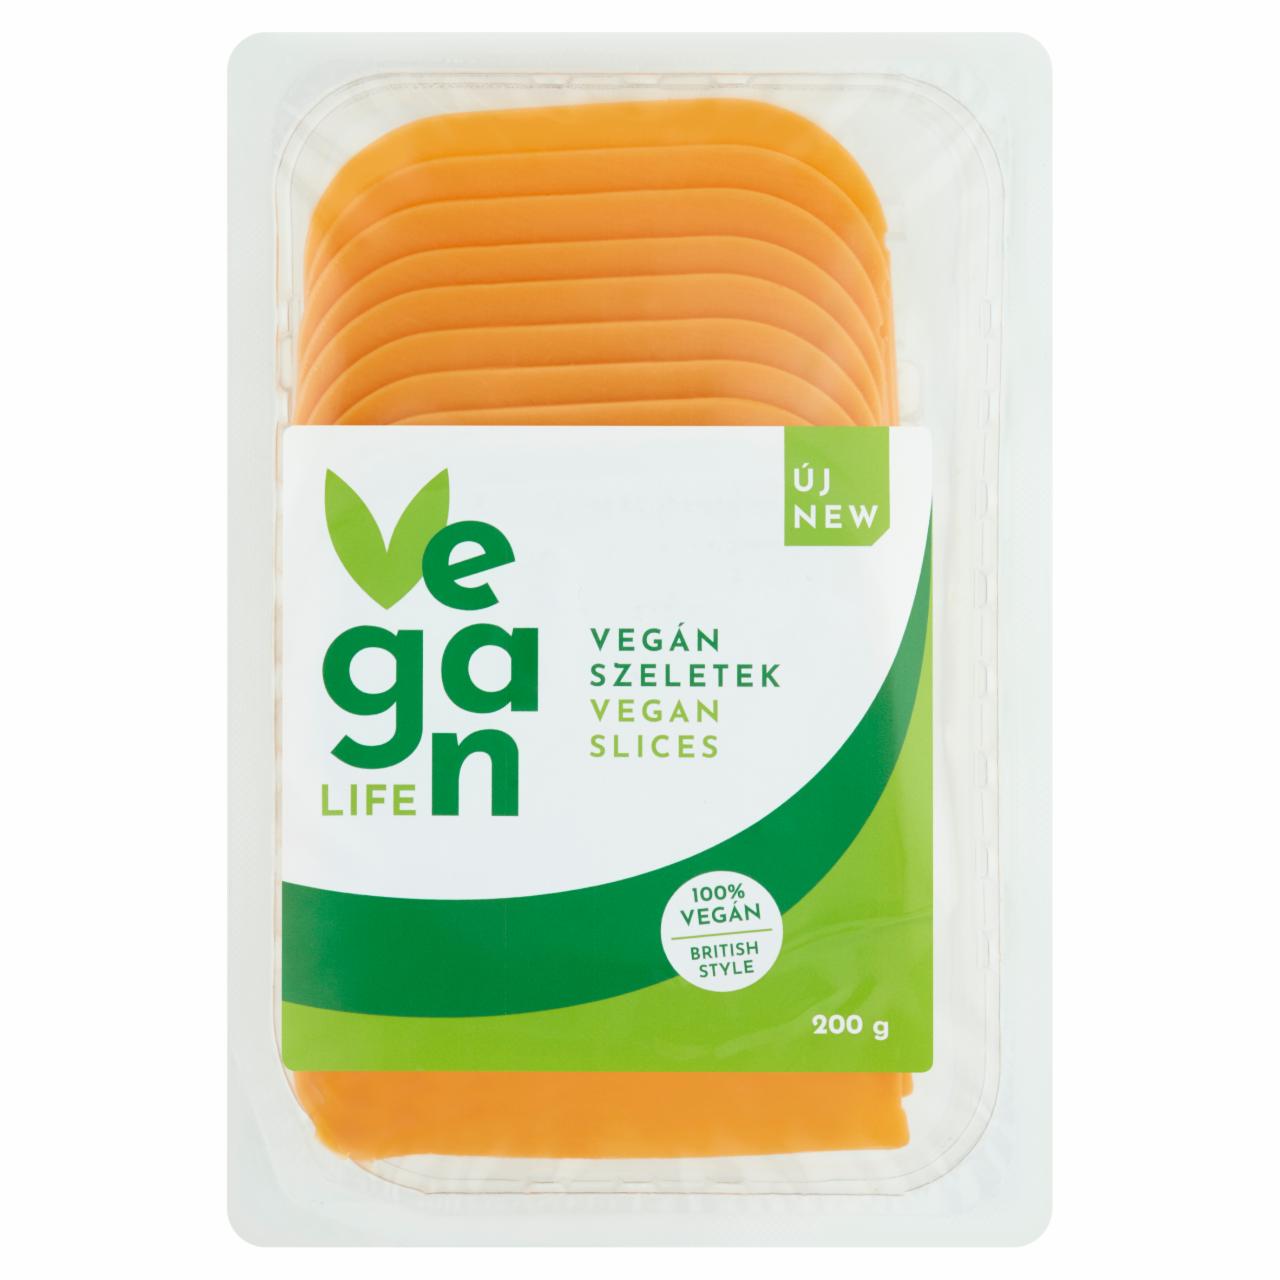 Képek - Vegan Life British Style szeletelt, vegán élelmiszer specialitás 200 g